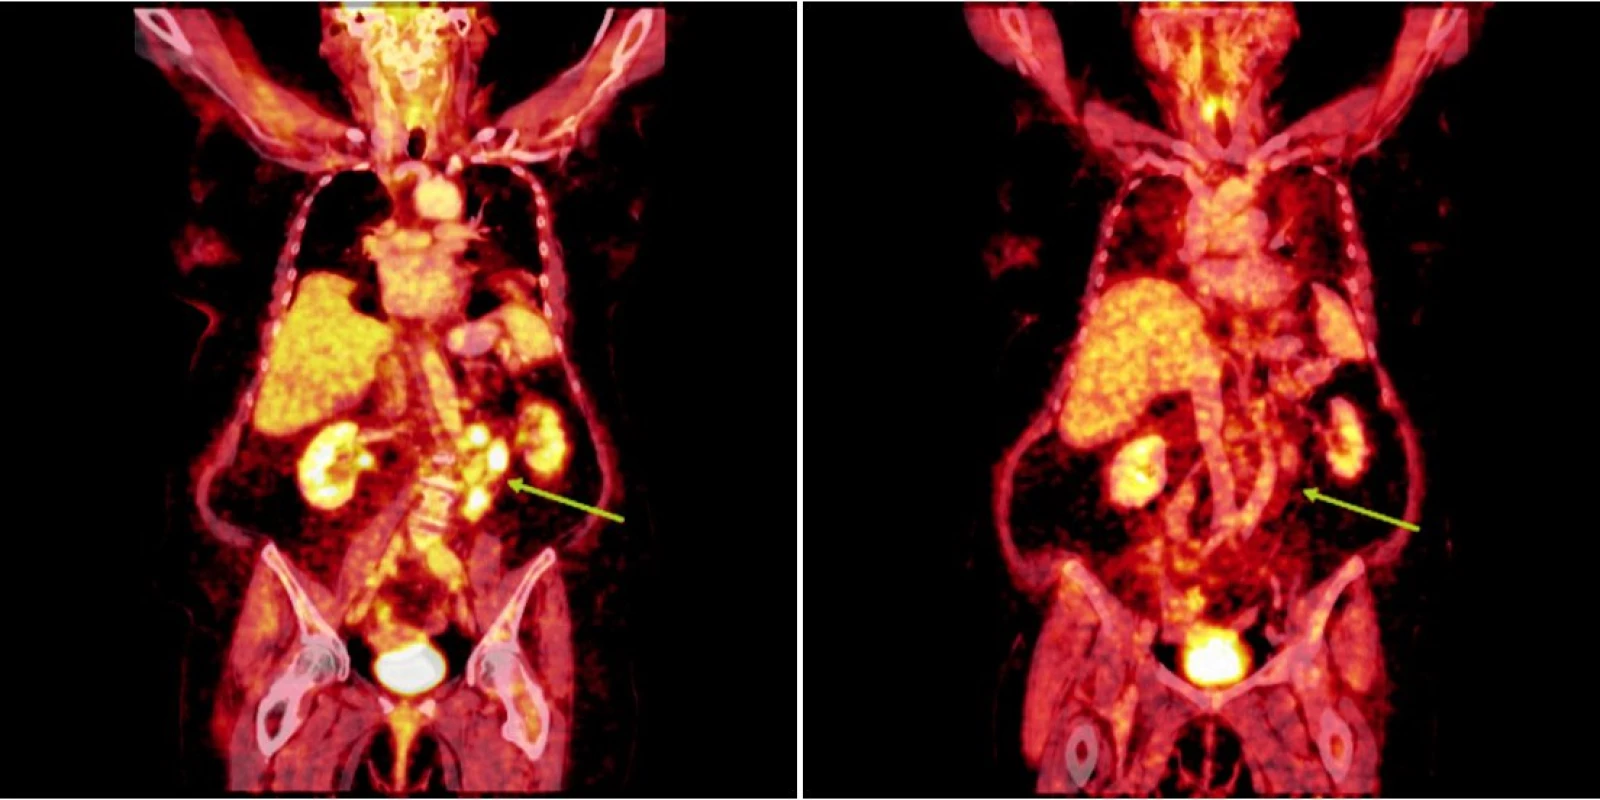 Srovnání snímků integrované pozitronové emisní tomografie (s použitím 18F-fluoro-deoxy-glukózy) a počítačové tomografie při relapsu (a) a po skončení léčby 90Y-ibritumomab tiuxetanem (b) u prvního pacienta s folikulárním lymfomem.